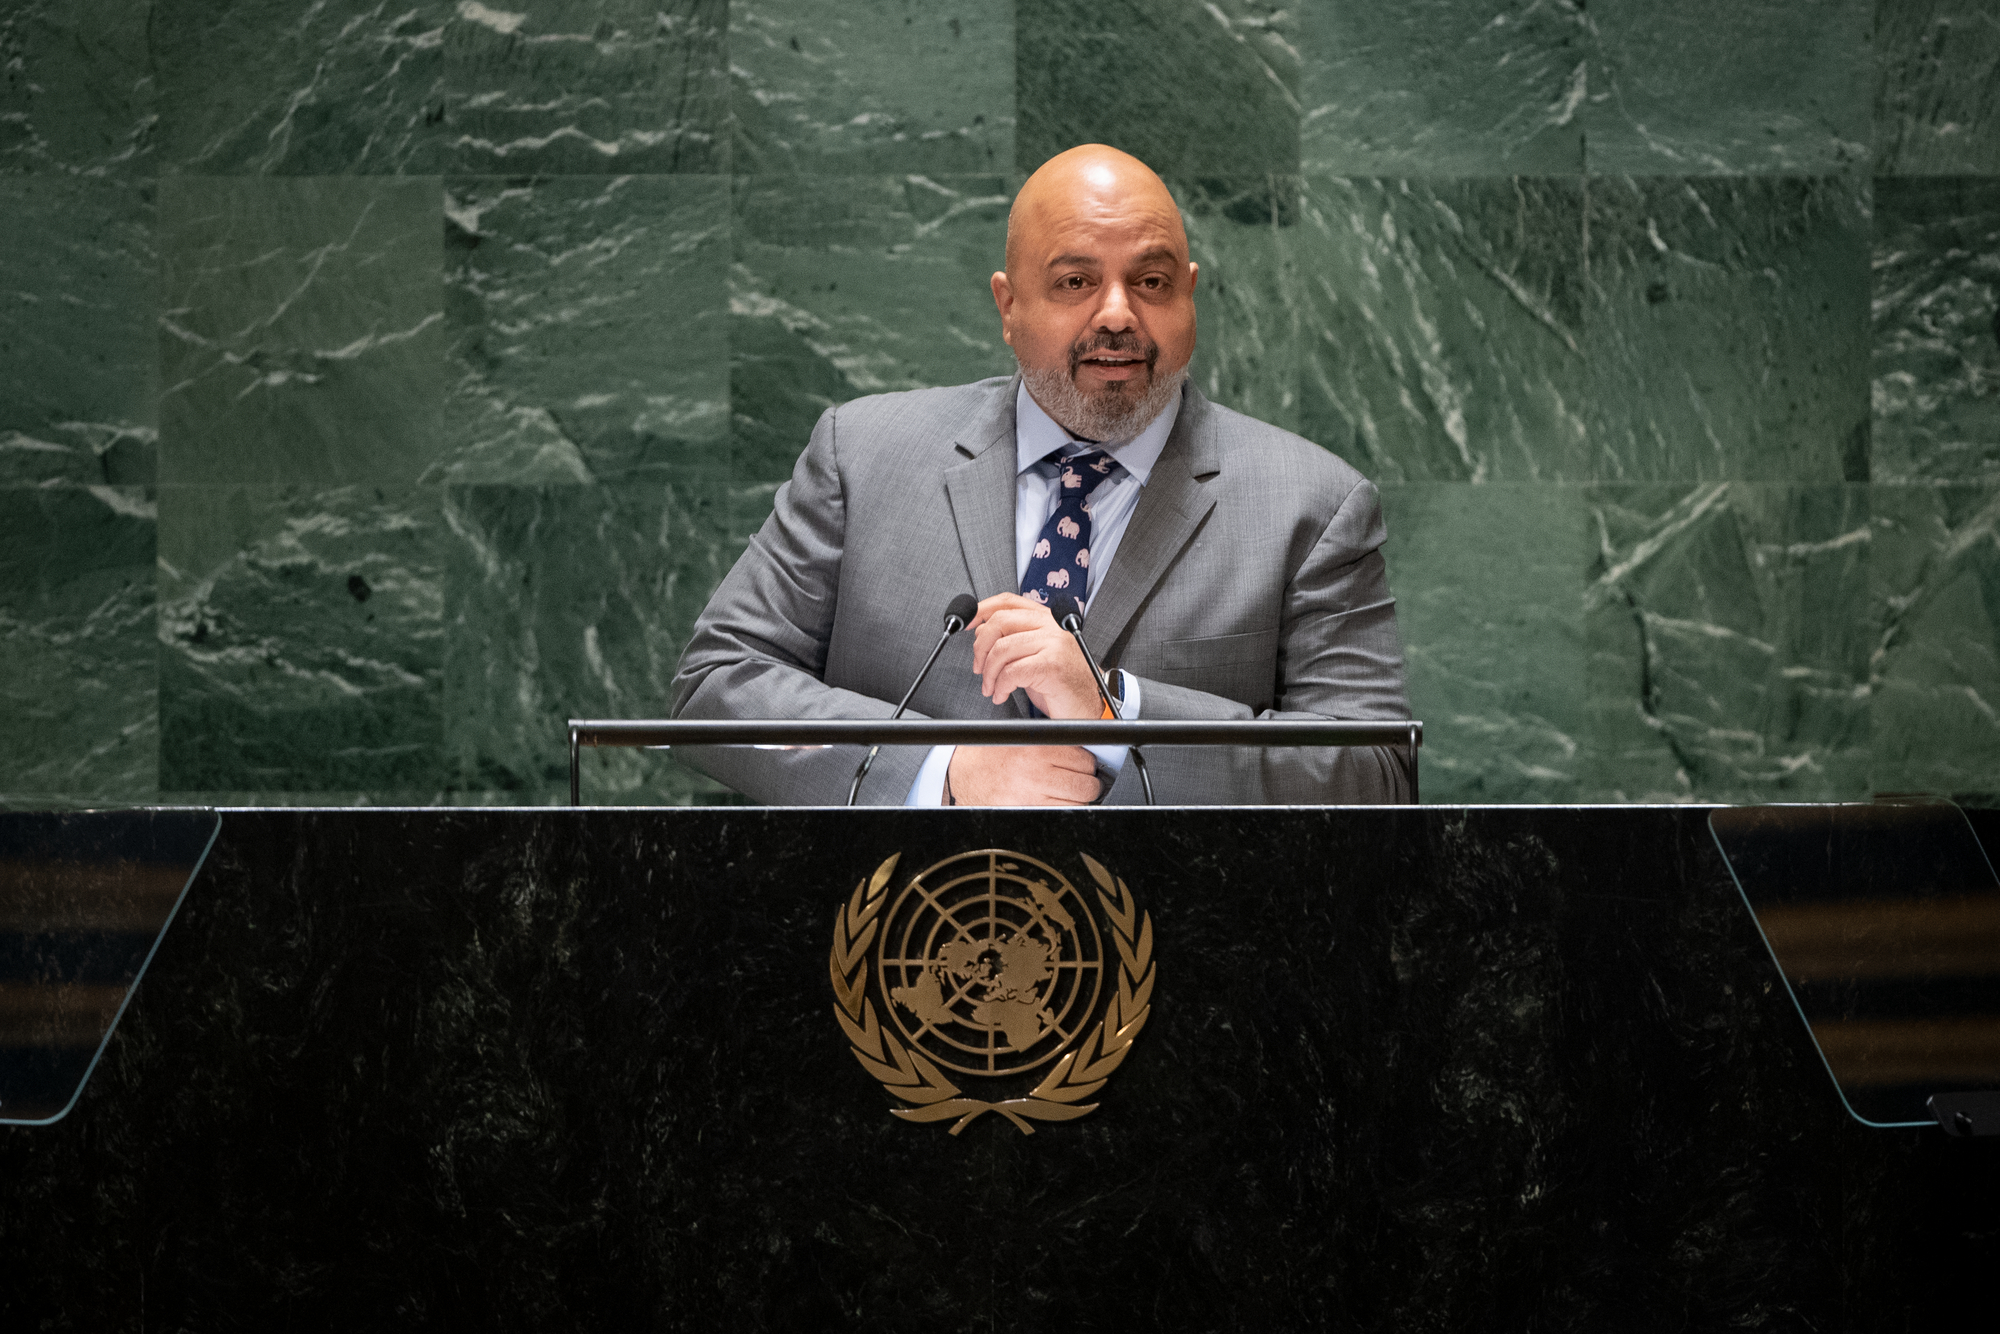 Kuwait's permanent representative to the United Nations, Ambassador Tariq Al-Bannai